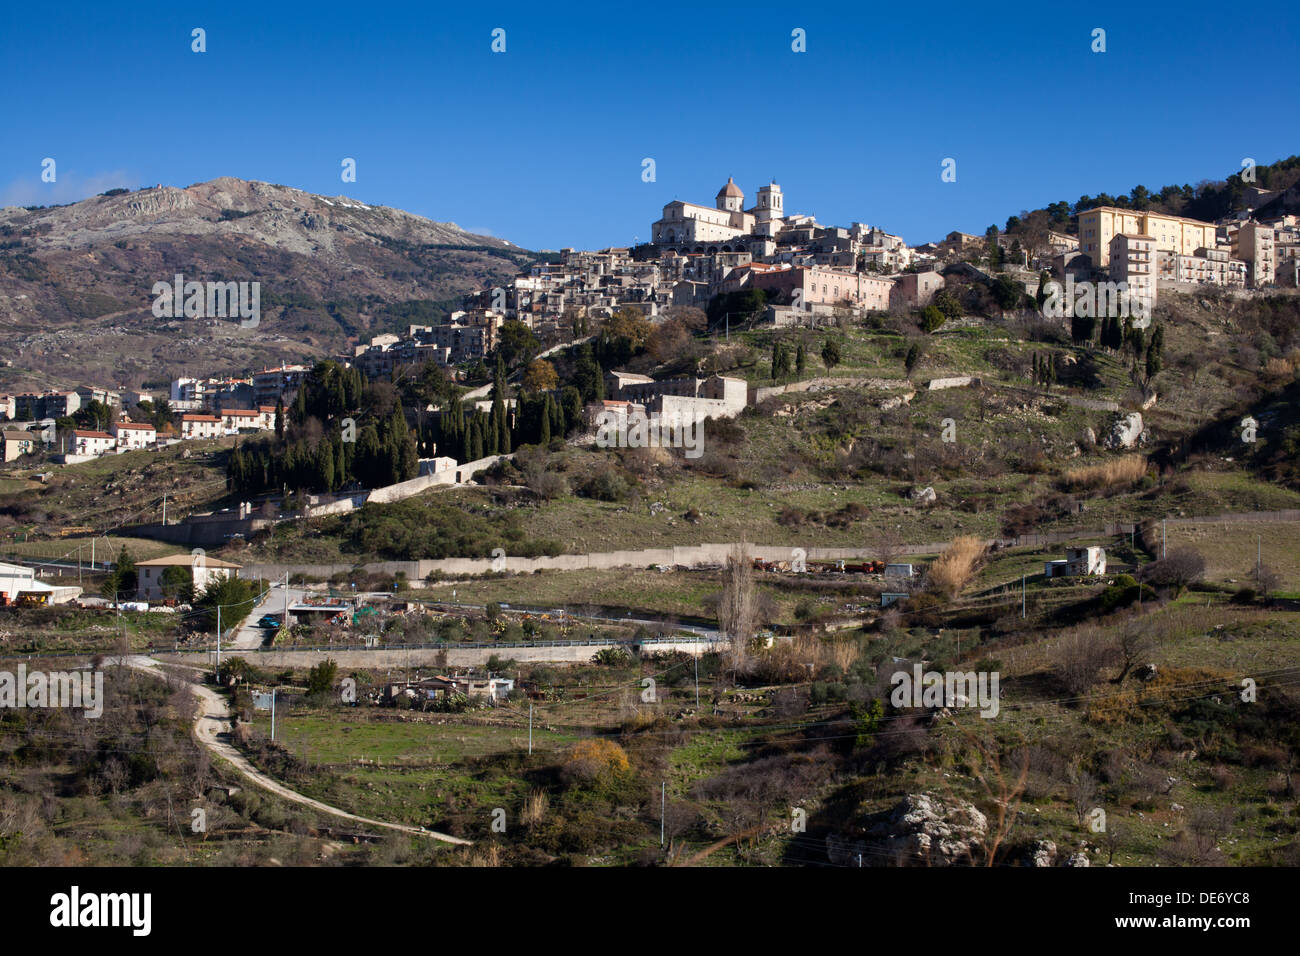 La ciudad de montaña de PETRALIA SOPRANA en las montañas Modonie, Sicilia. Foto de stock